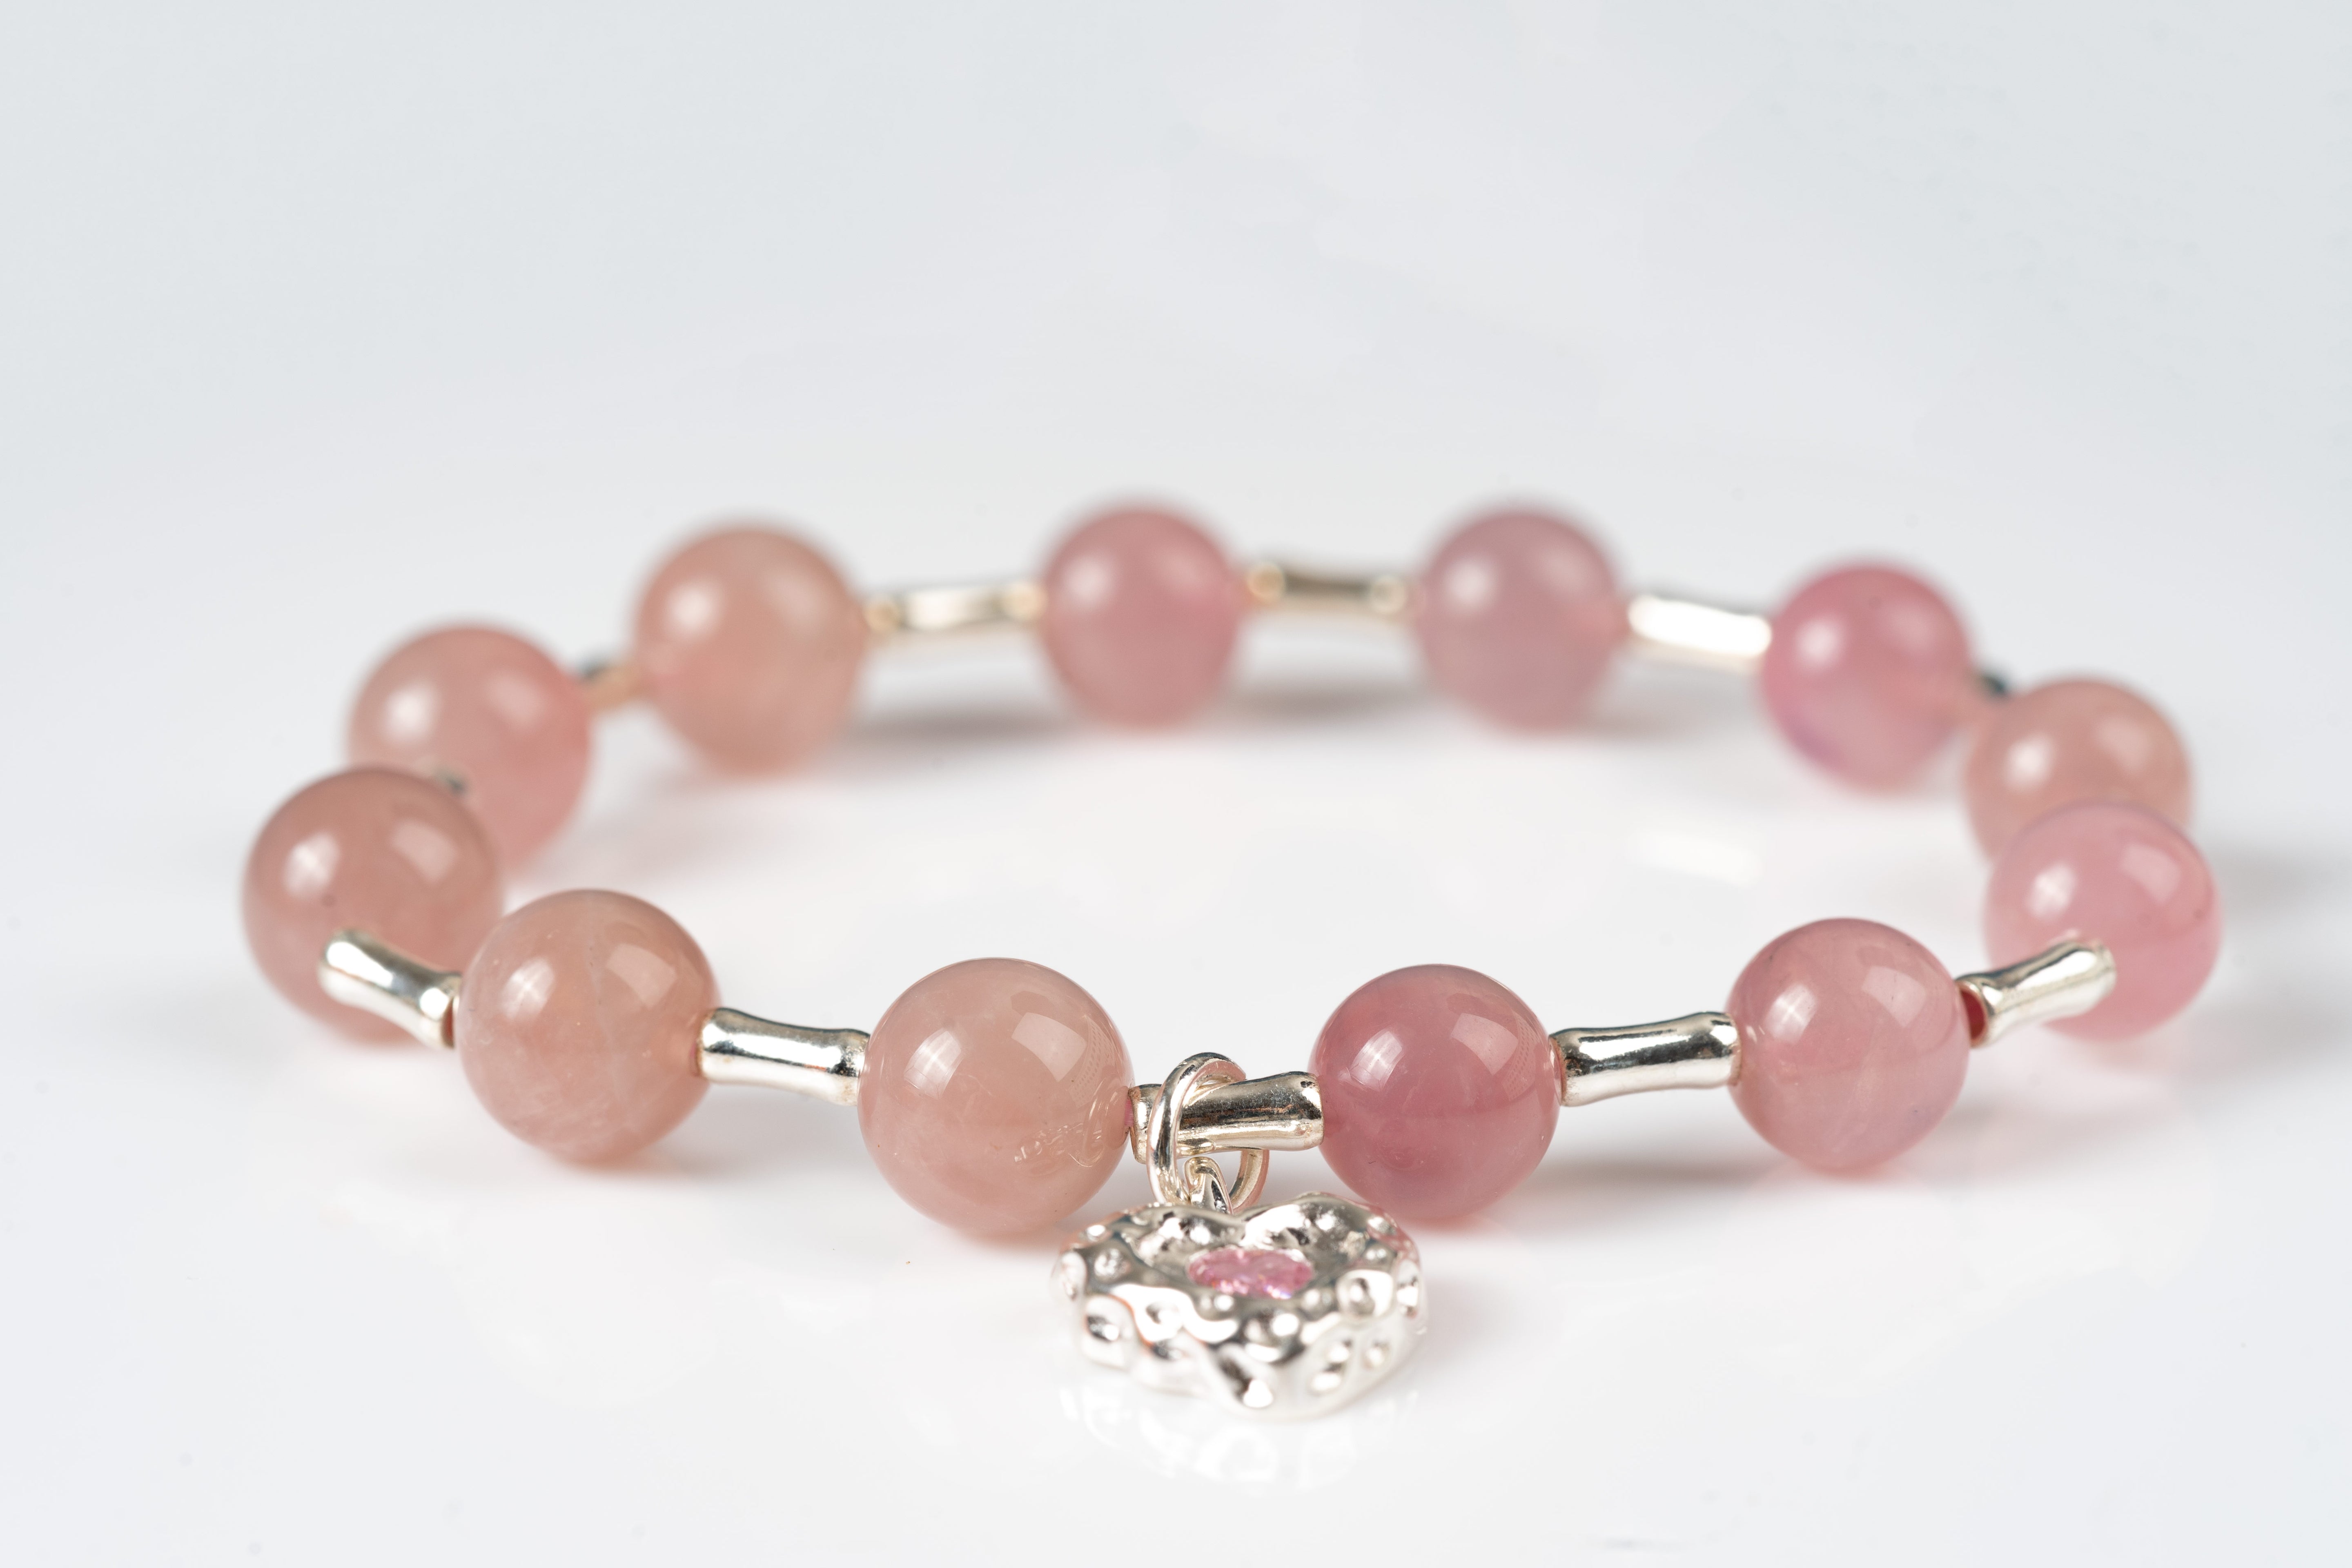 Rose quartz sterling silver bracelet